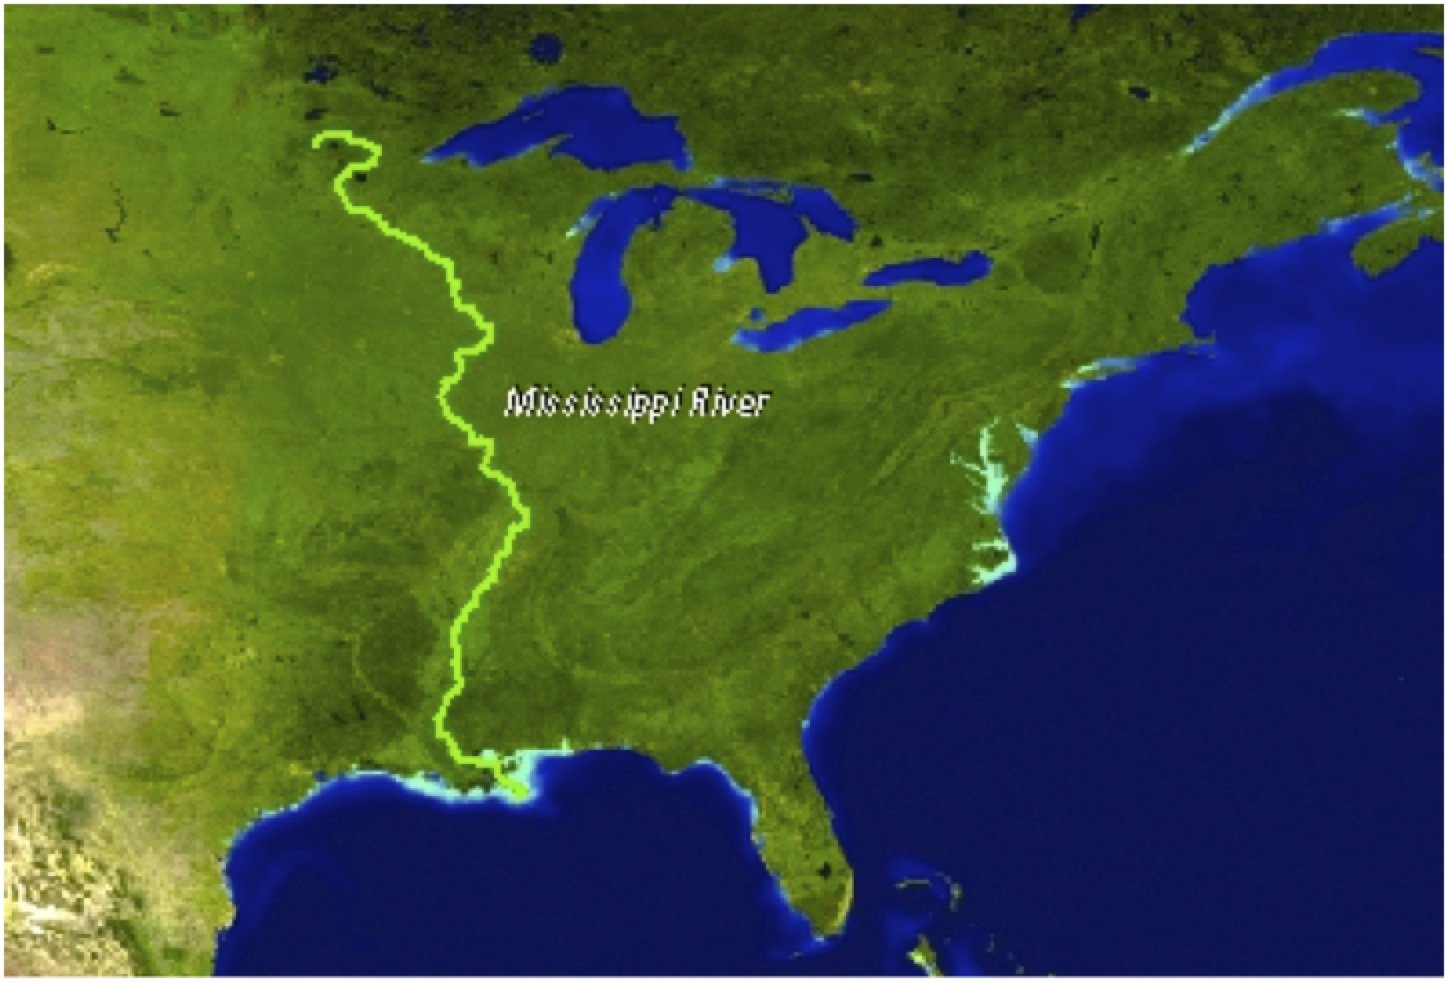 Приток крупнейшей реки северной америки. Река Миссисипи на карте. Исток реки Миссисипи. Северная Америка река Миссисипи. Исток реки Миссисипи в Северной Америке.